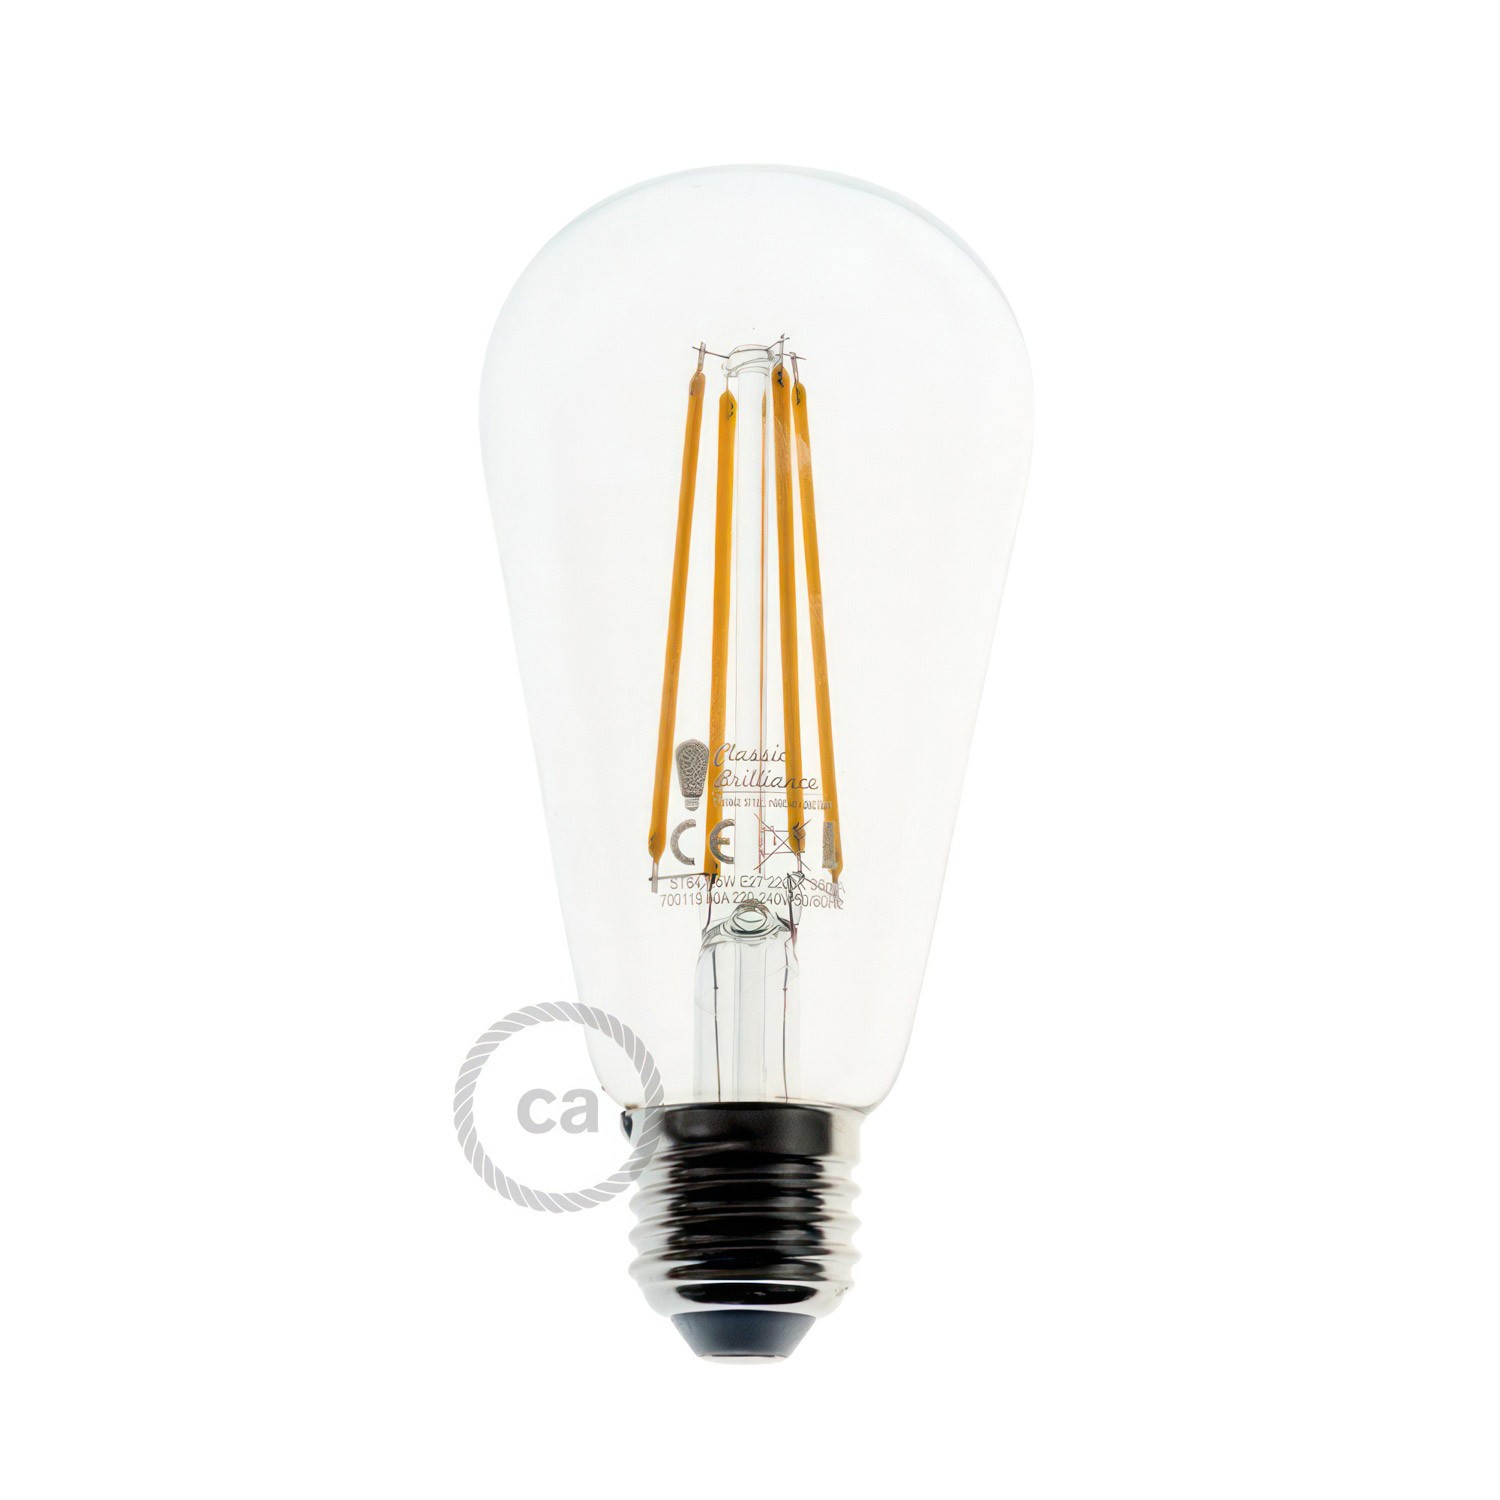 Eiva Snake, prijenosna vanjska svjetiljka, 5 m tekstilni kabel, IP65 vodootporno grlo za žarulje i utikač